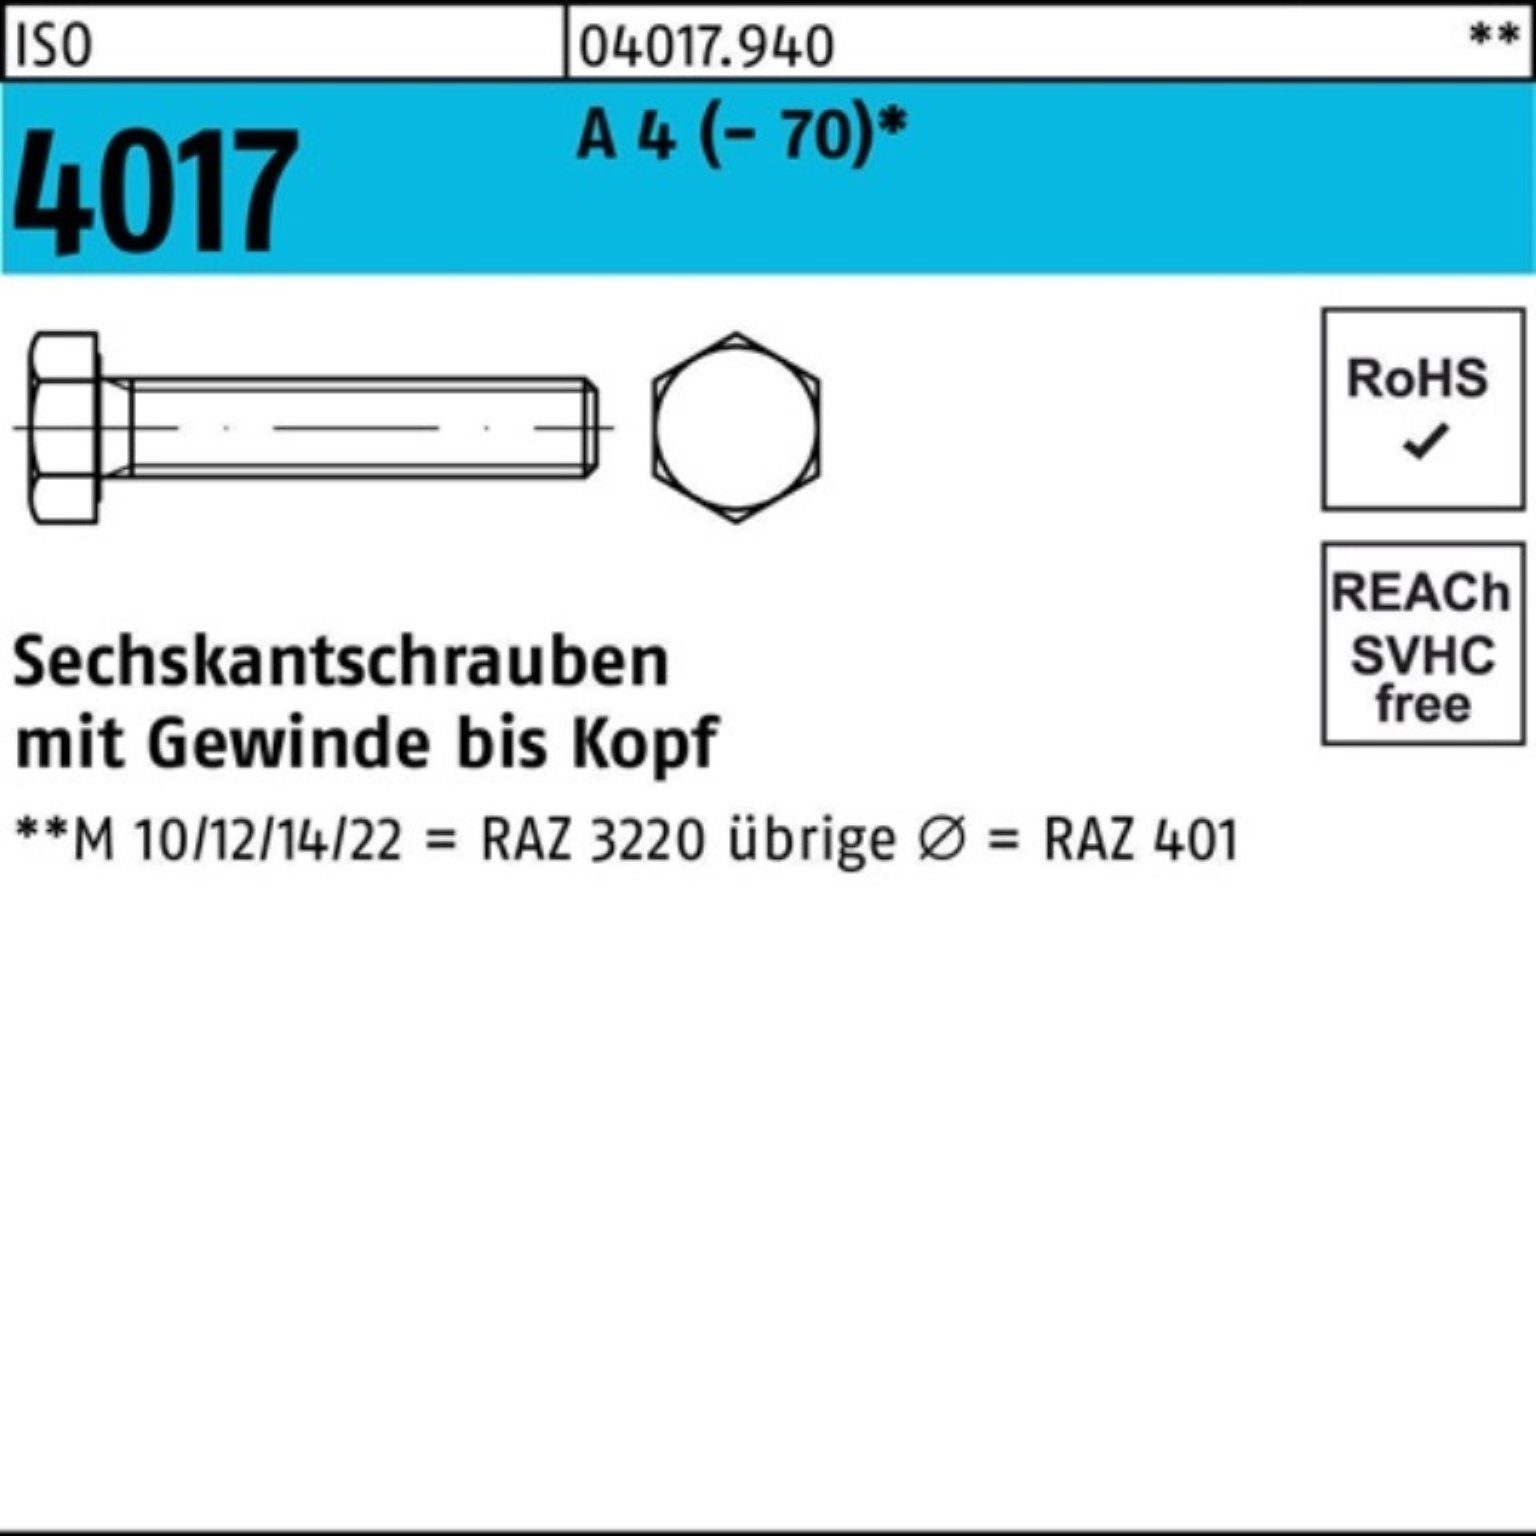 Bufab Sechskantschraube 100er Pack A 4 M12x VG ISO Stück 160 Sechskantschraube (70) 1 4017